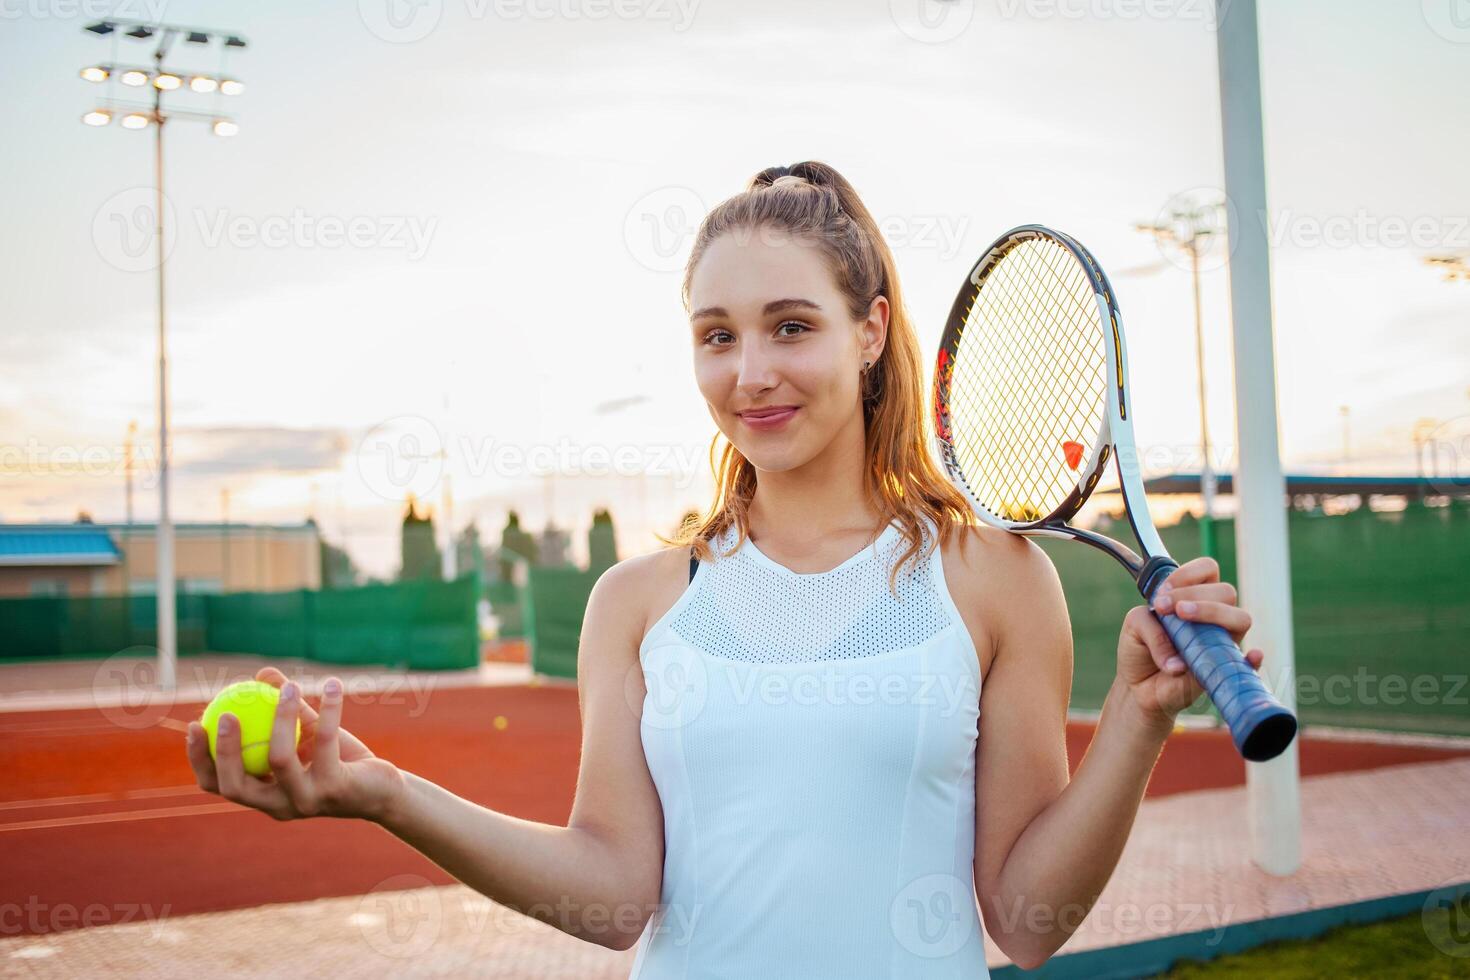 tennis rechtbank, atletisch lichaam. fitheid, gewicht verlies foto